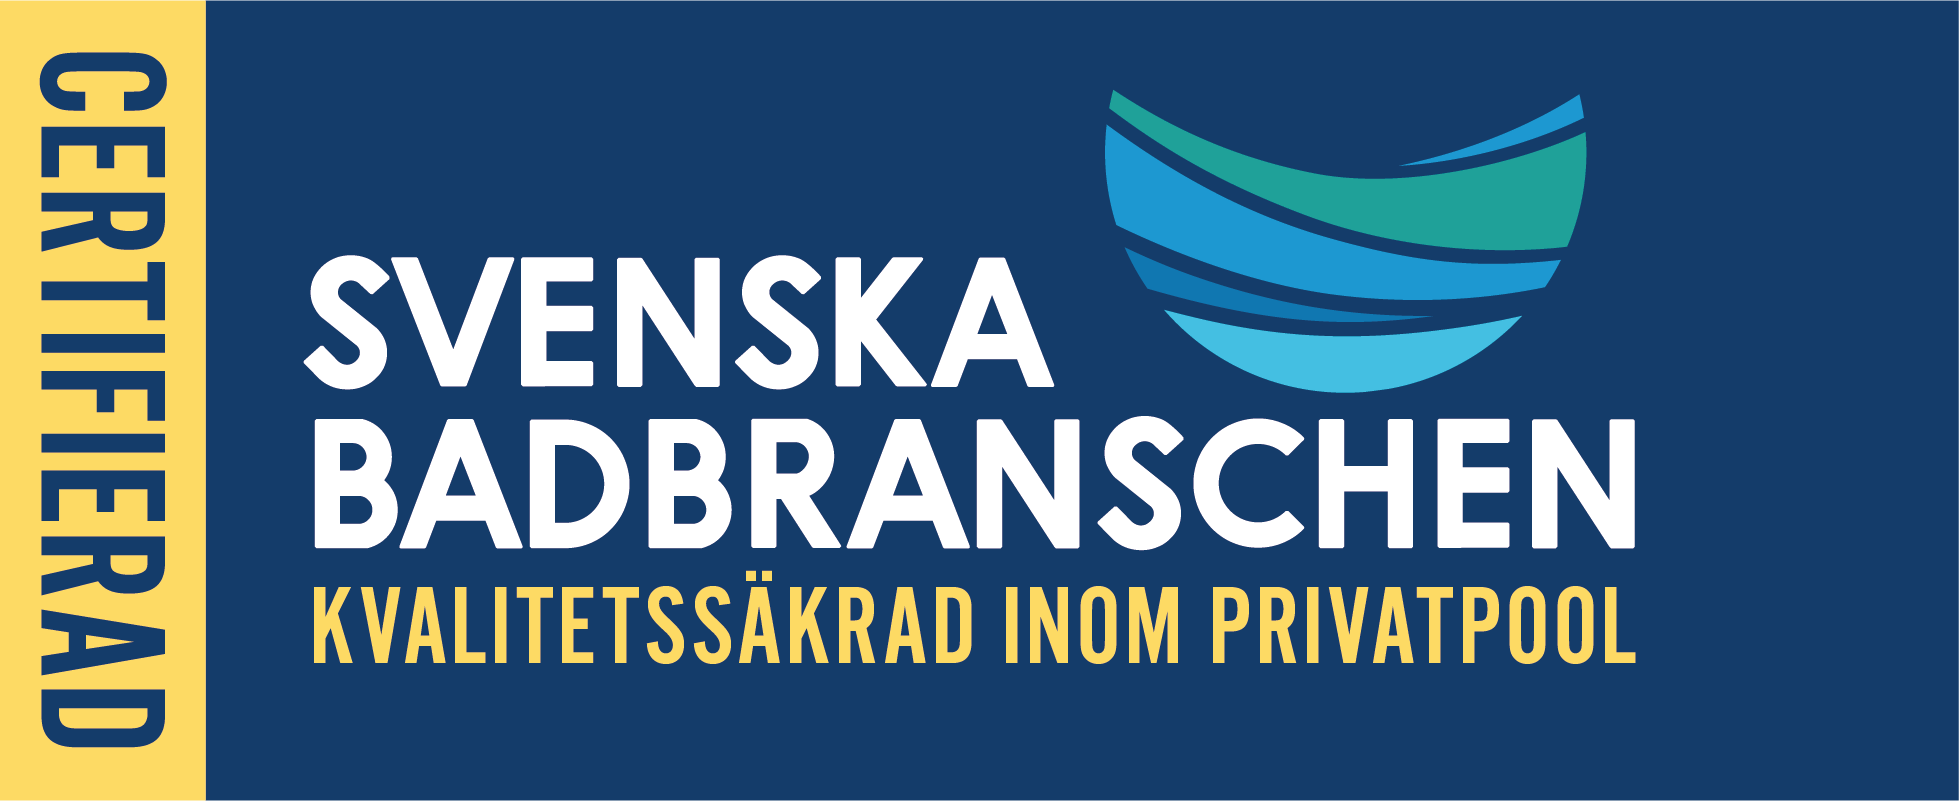 Certifierad leverantör av pooler - kvalificerad av Svenska Badbranschen